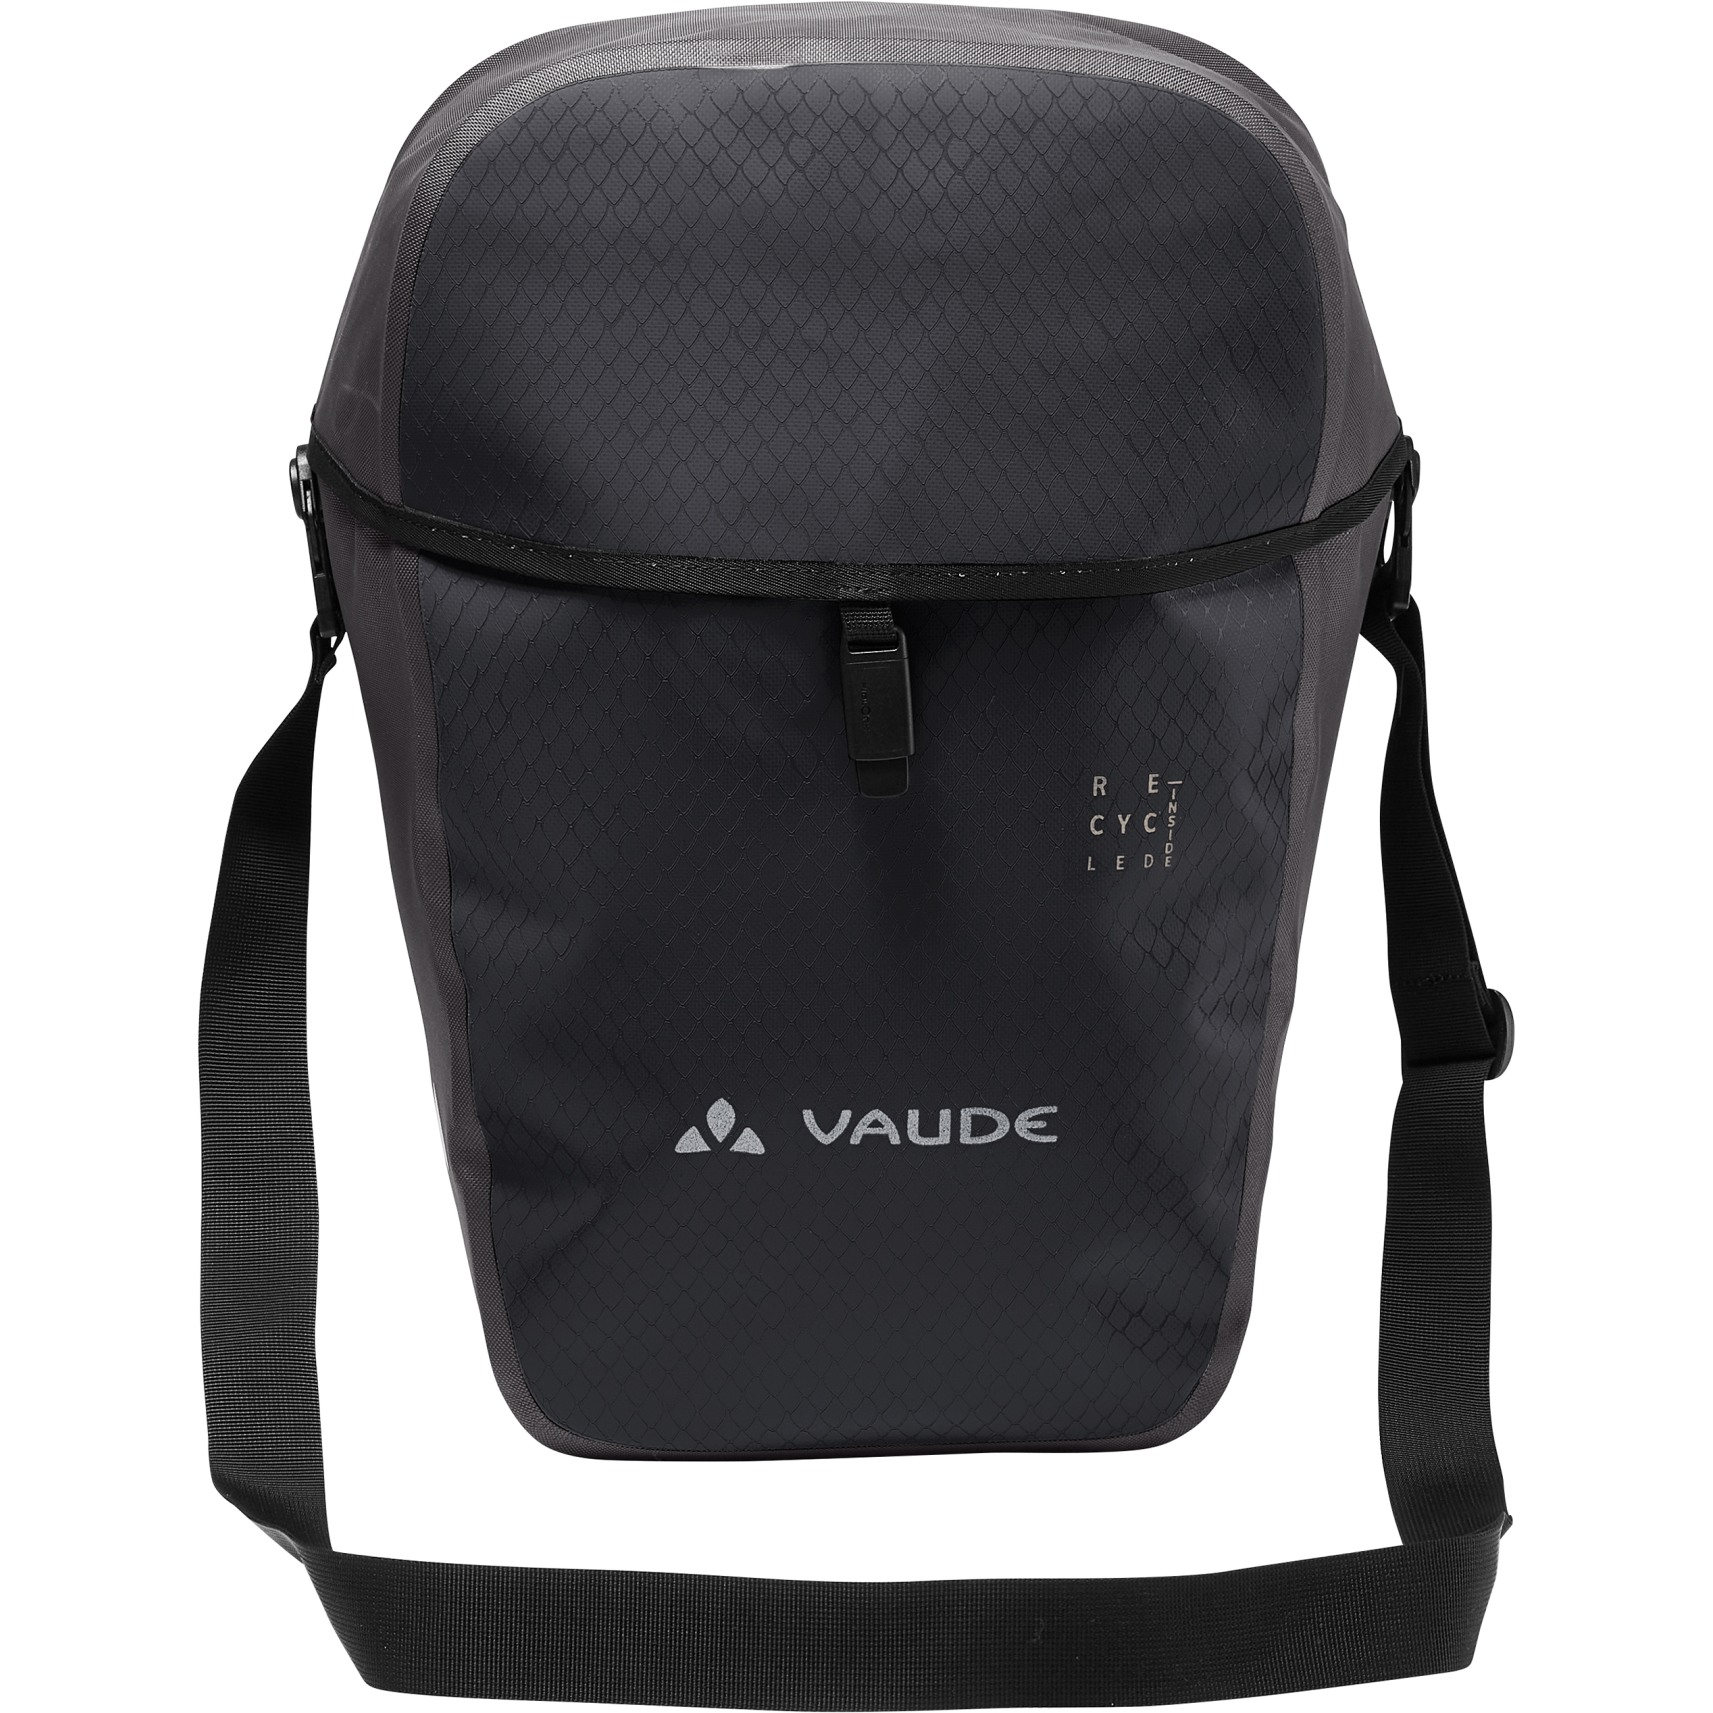 Produktbild von Vaude Aqua Commute Single Hinterradtasche 26L - schwarz